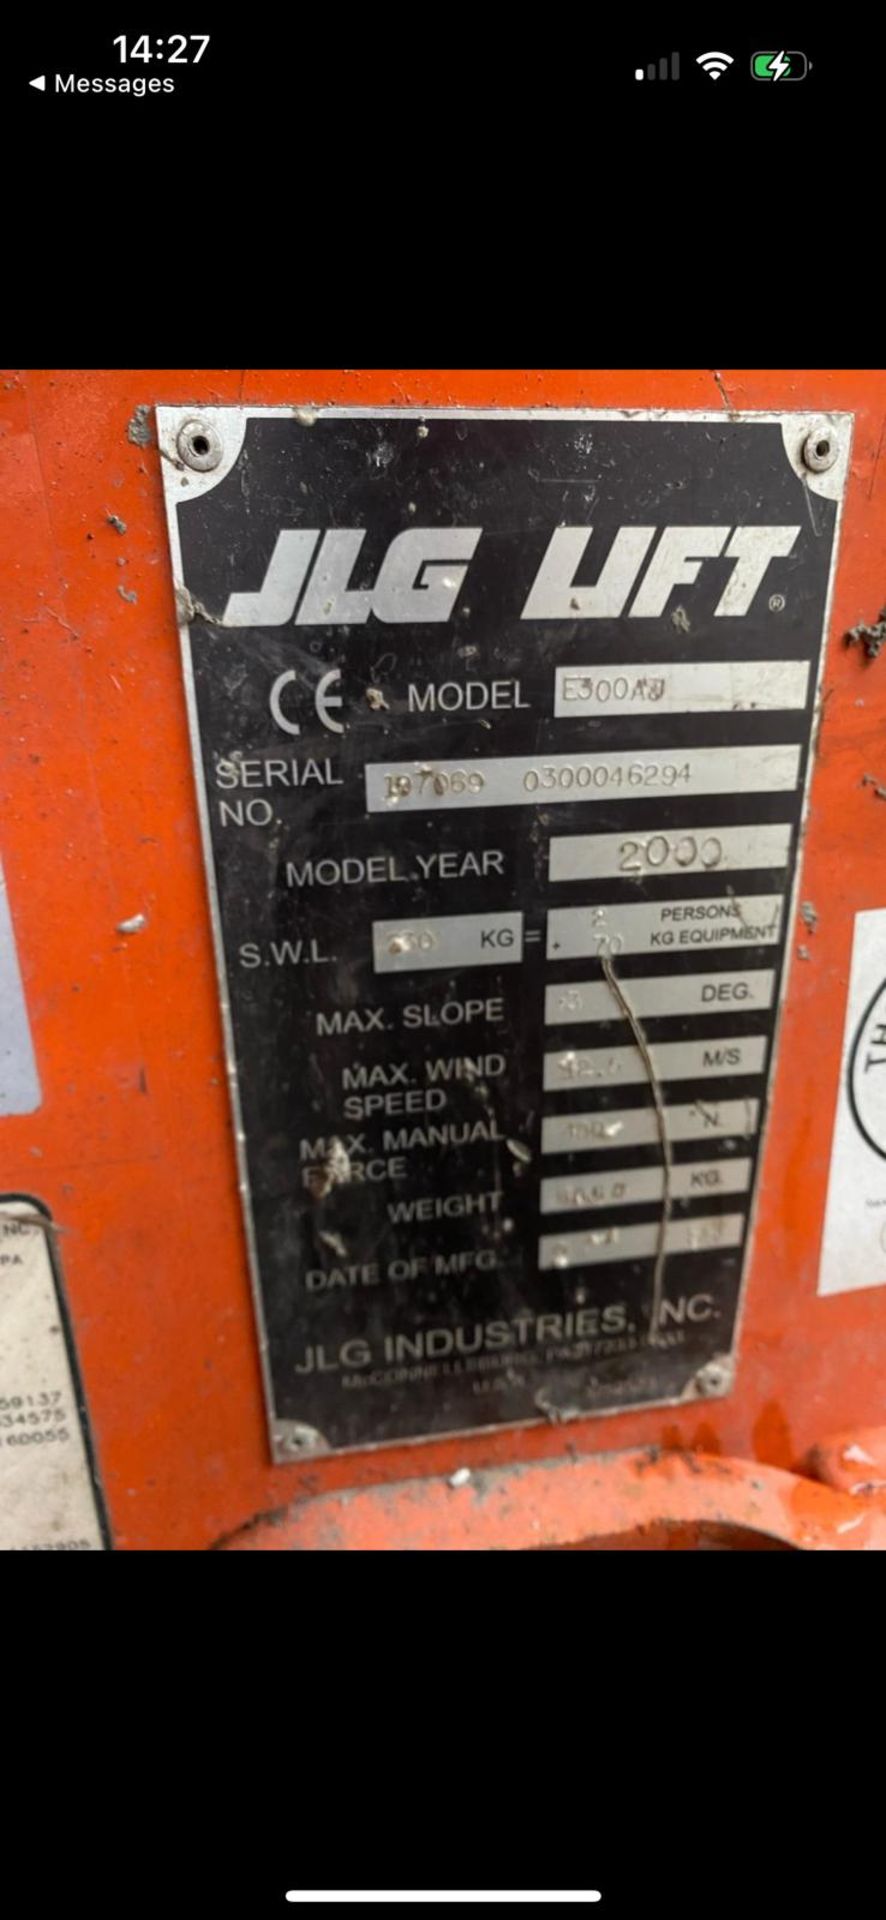 JLG Model E300 Cherry Picker Lift (2000 Model) - Image 12 of 12